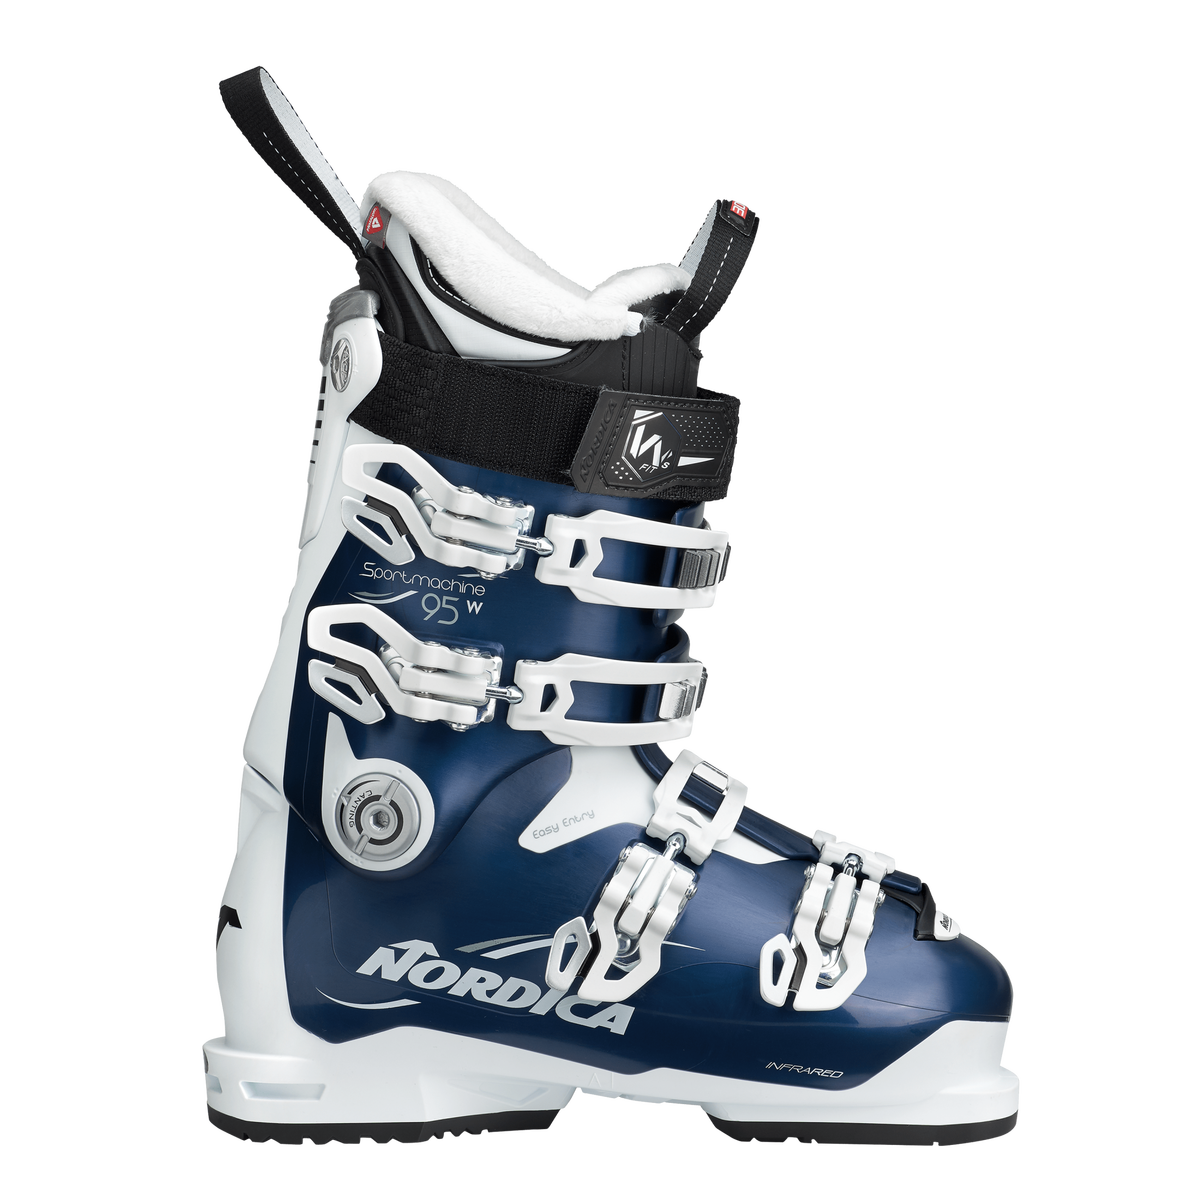 Lyžařské boty Nordica SPORTMACHINE 95 W - 245, blue/black/white